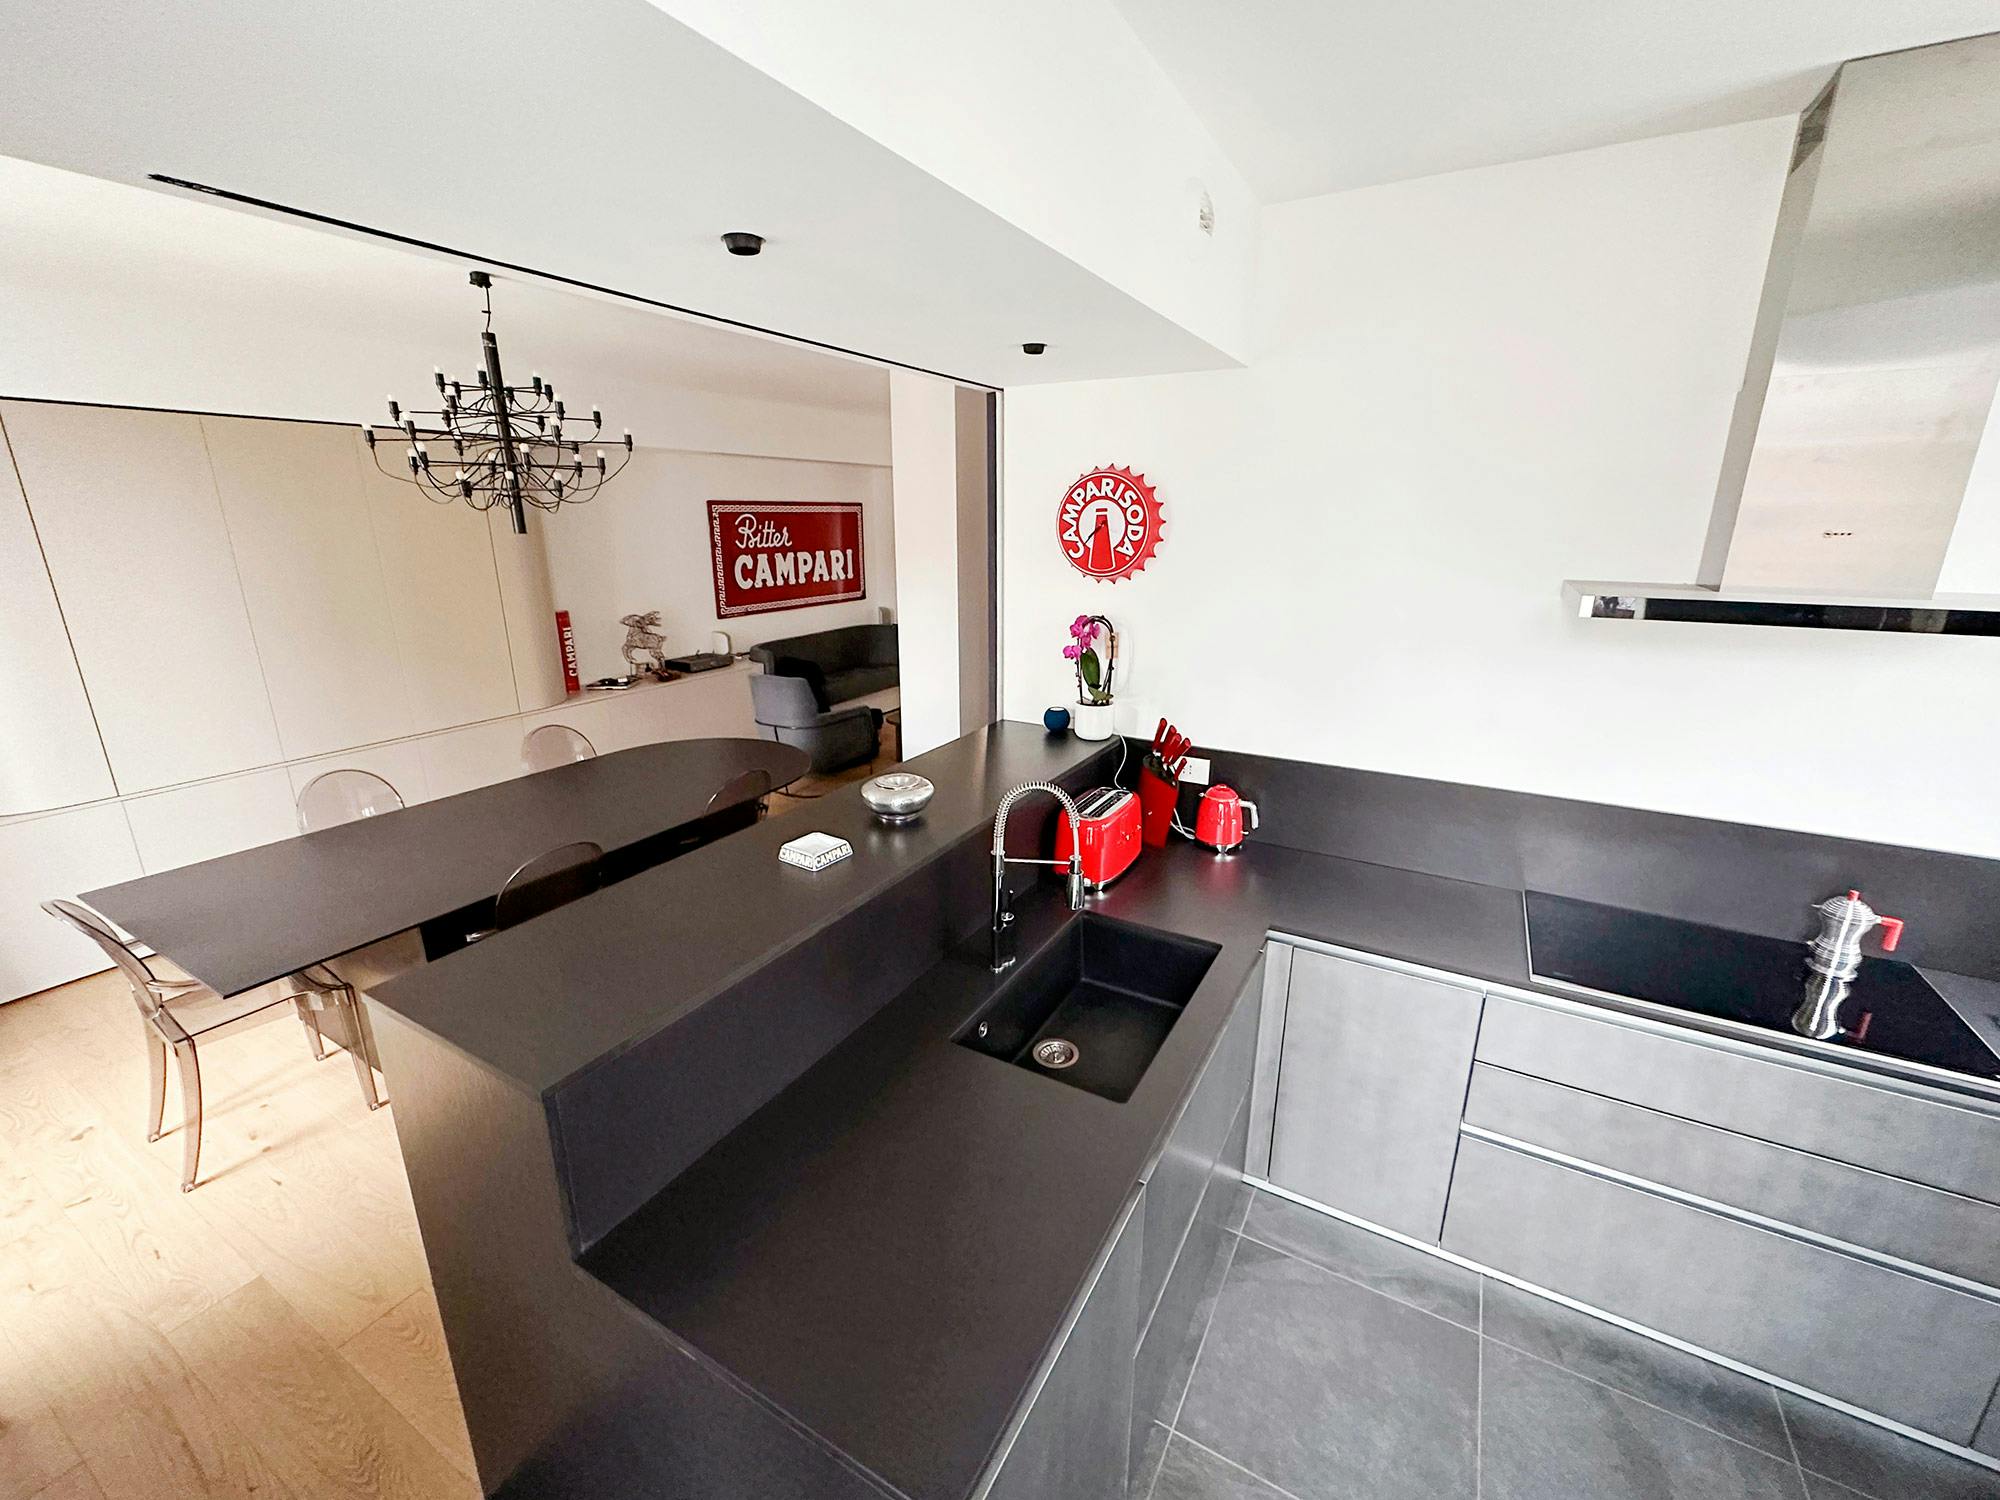 Imagen número 76 de Un apartamento de diseño italiano consigue integrar con elegancia cocina y comedor gracias a Dekton